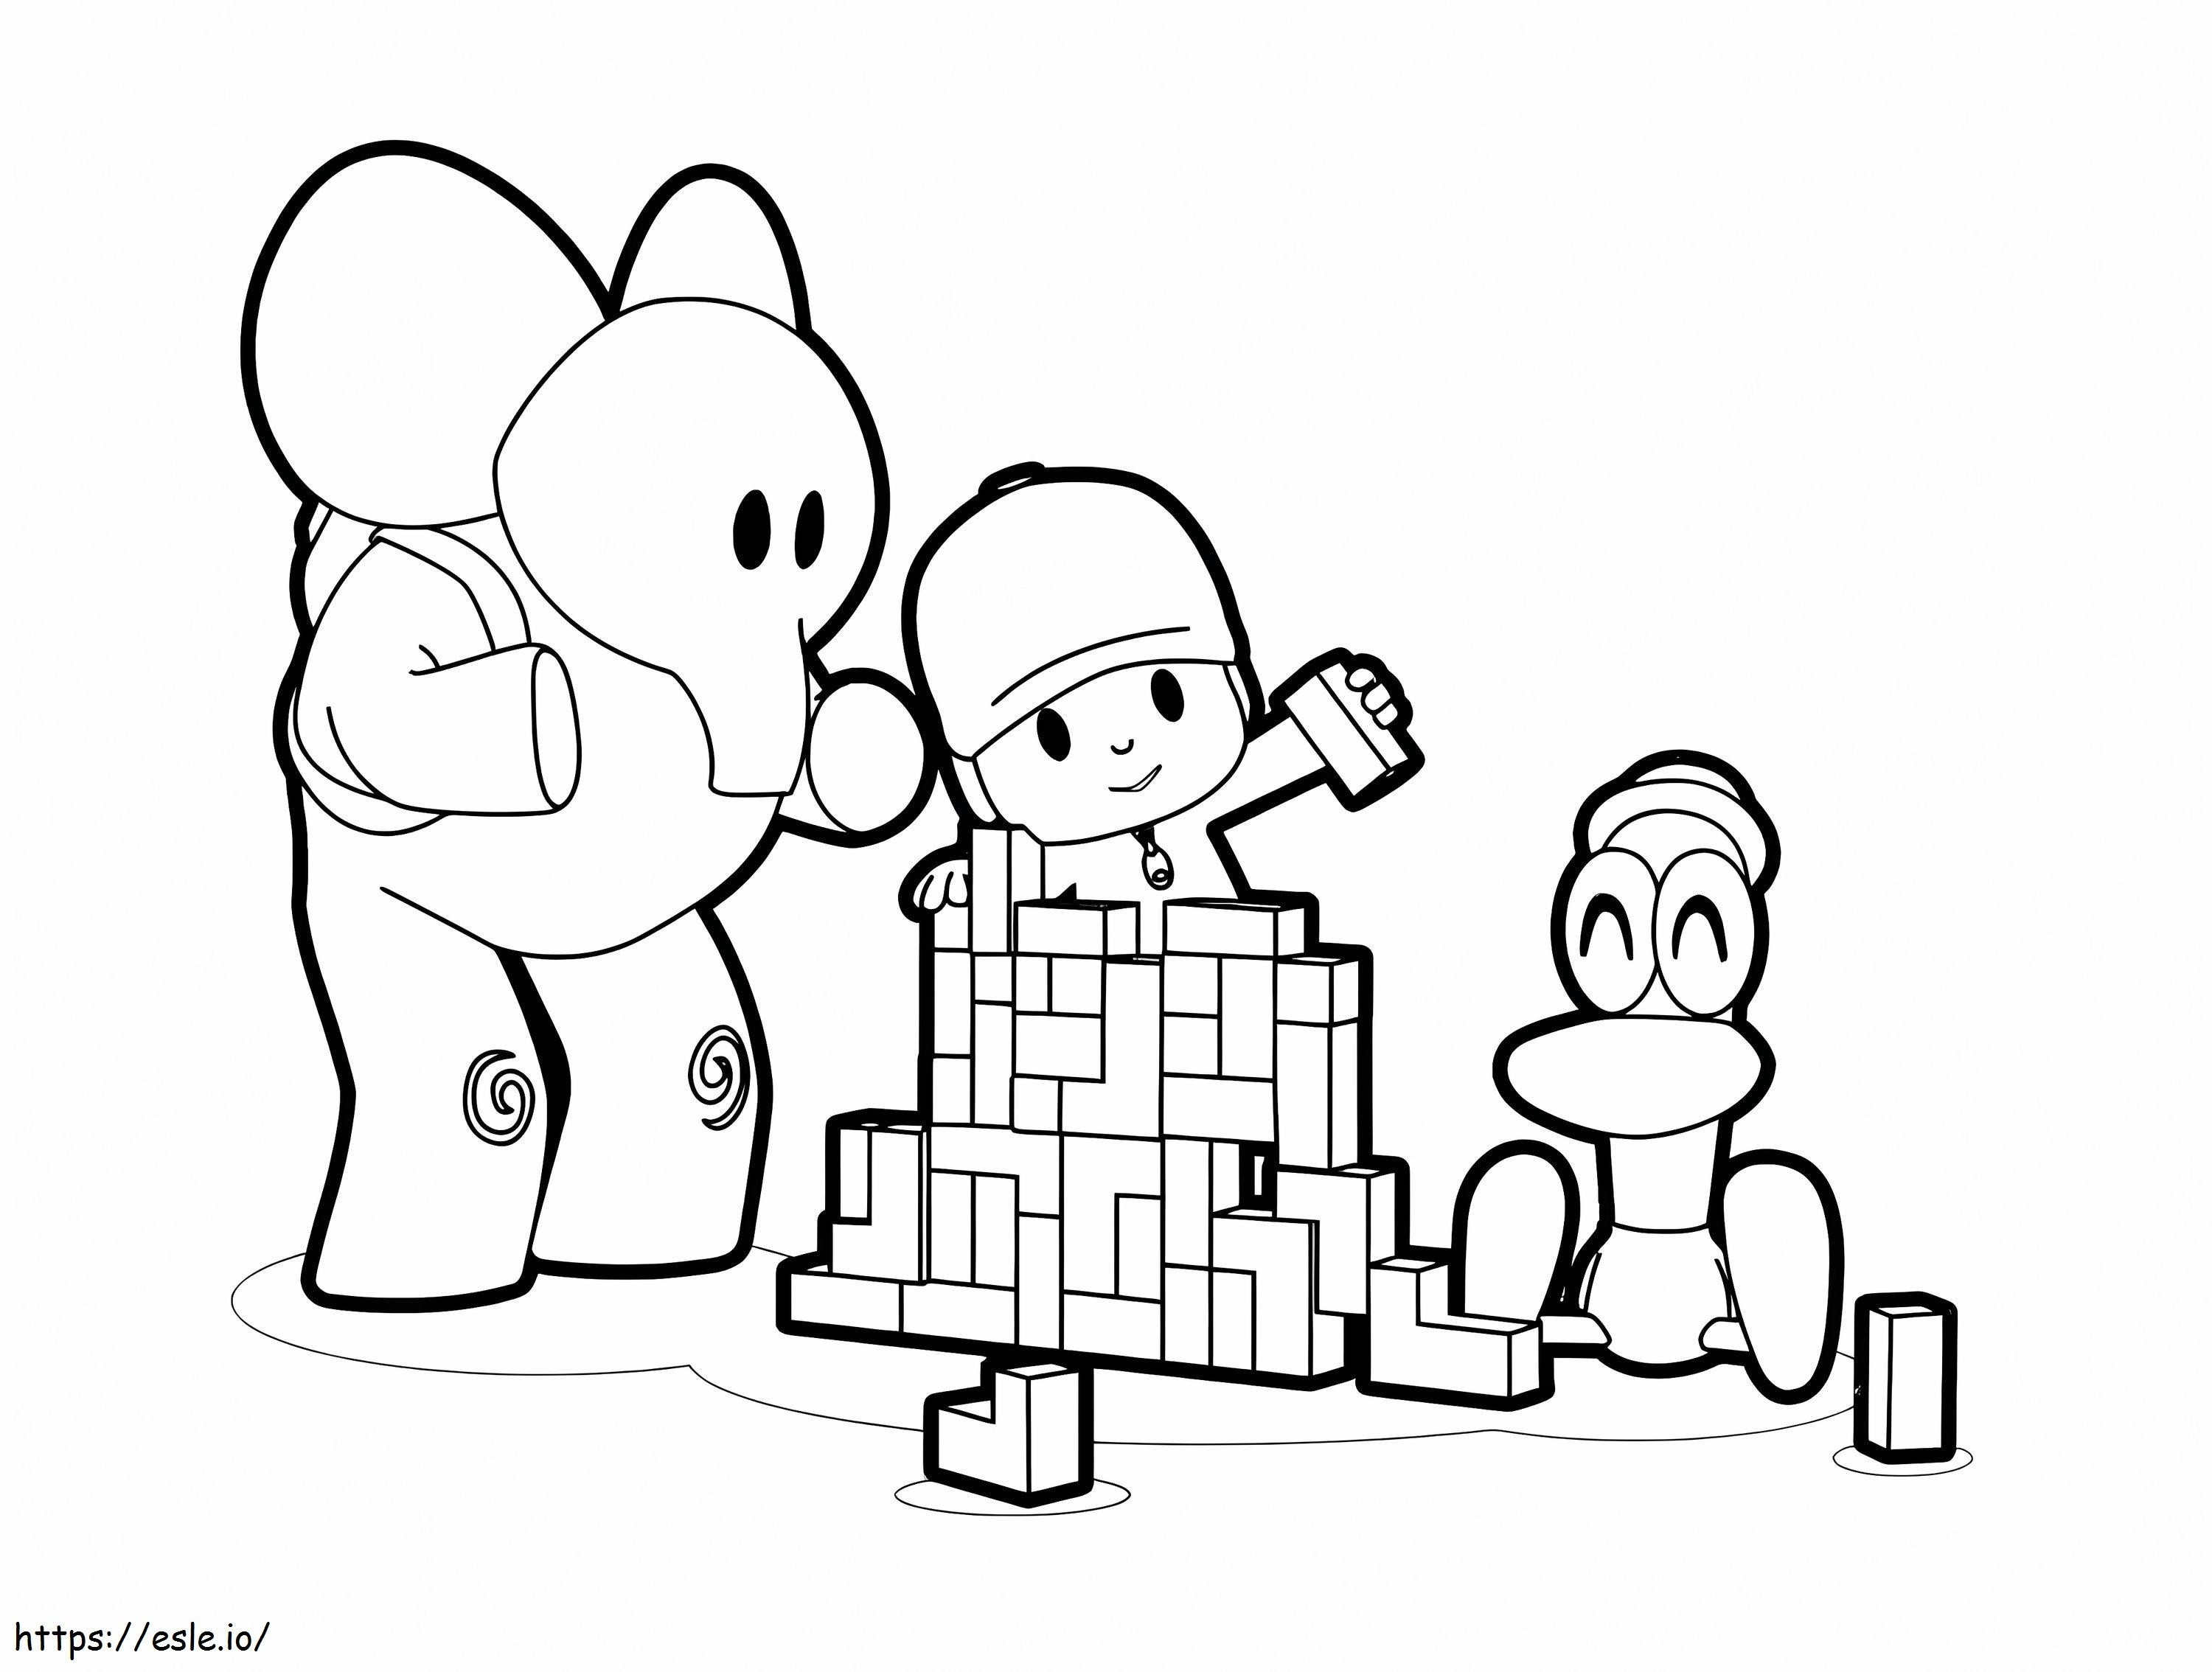 Pocoyo und seine Freunde spielen Lego ausmalbilder